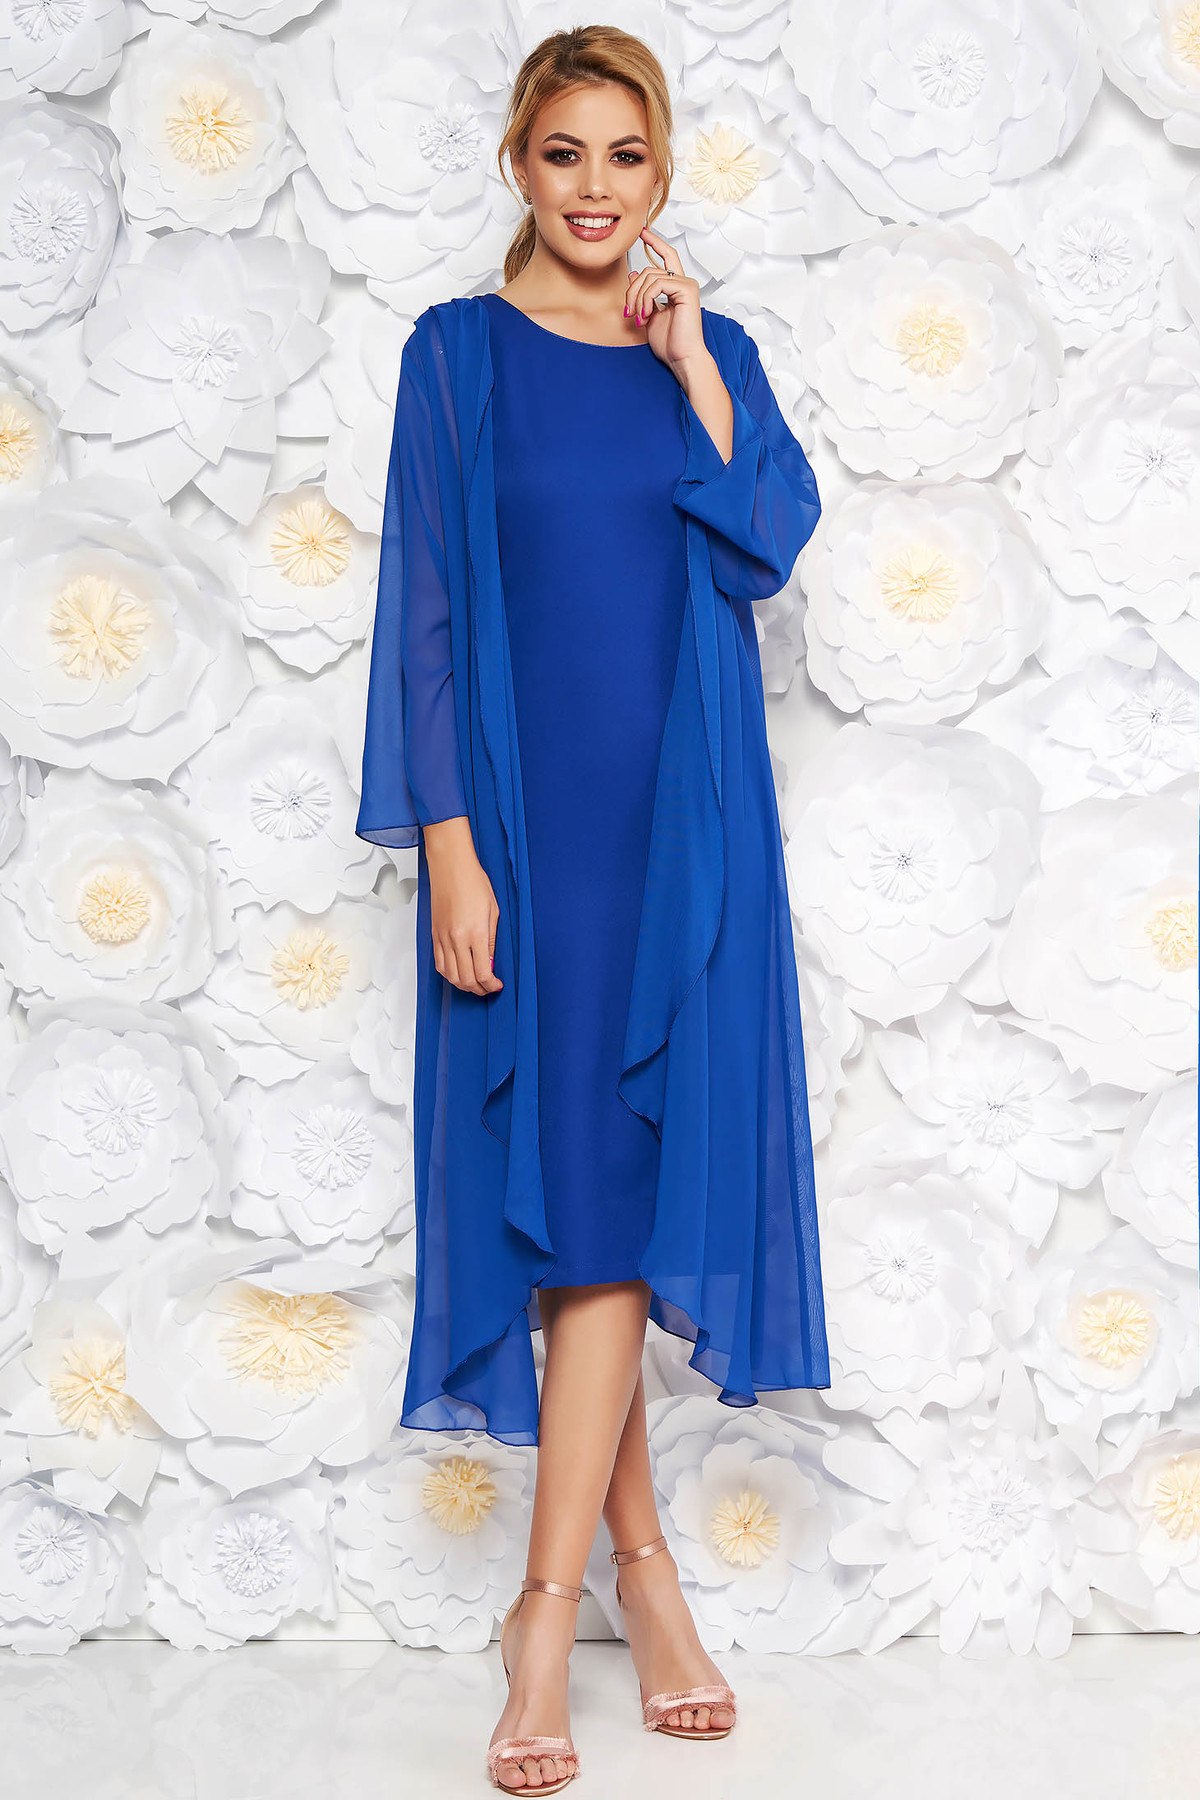 Rochie albastra eleganta midi din material fin la atingere fara maneci cu capa detasabila